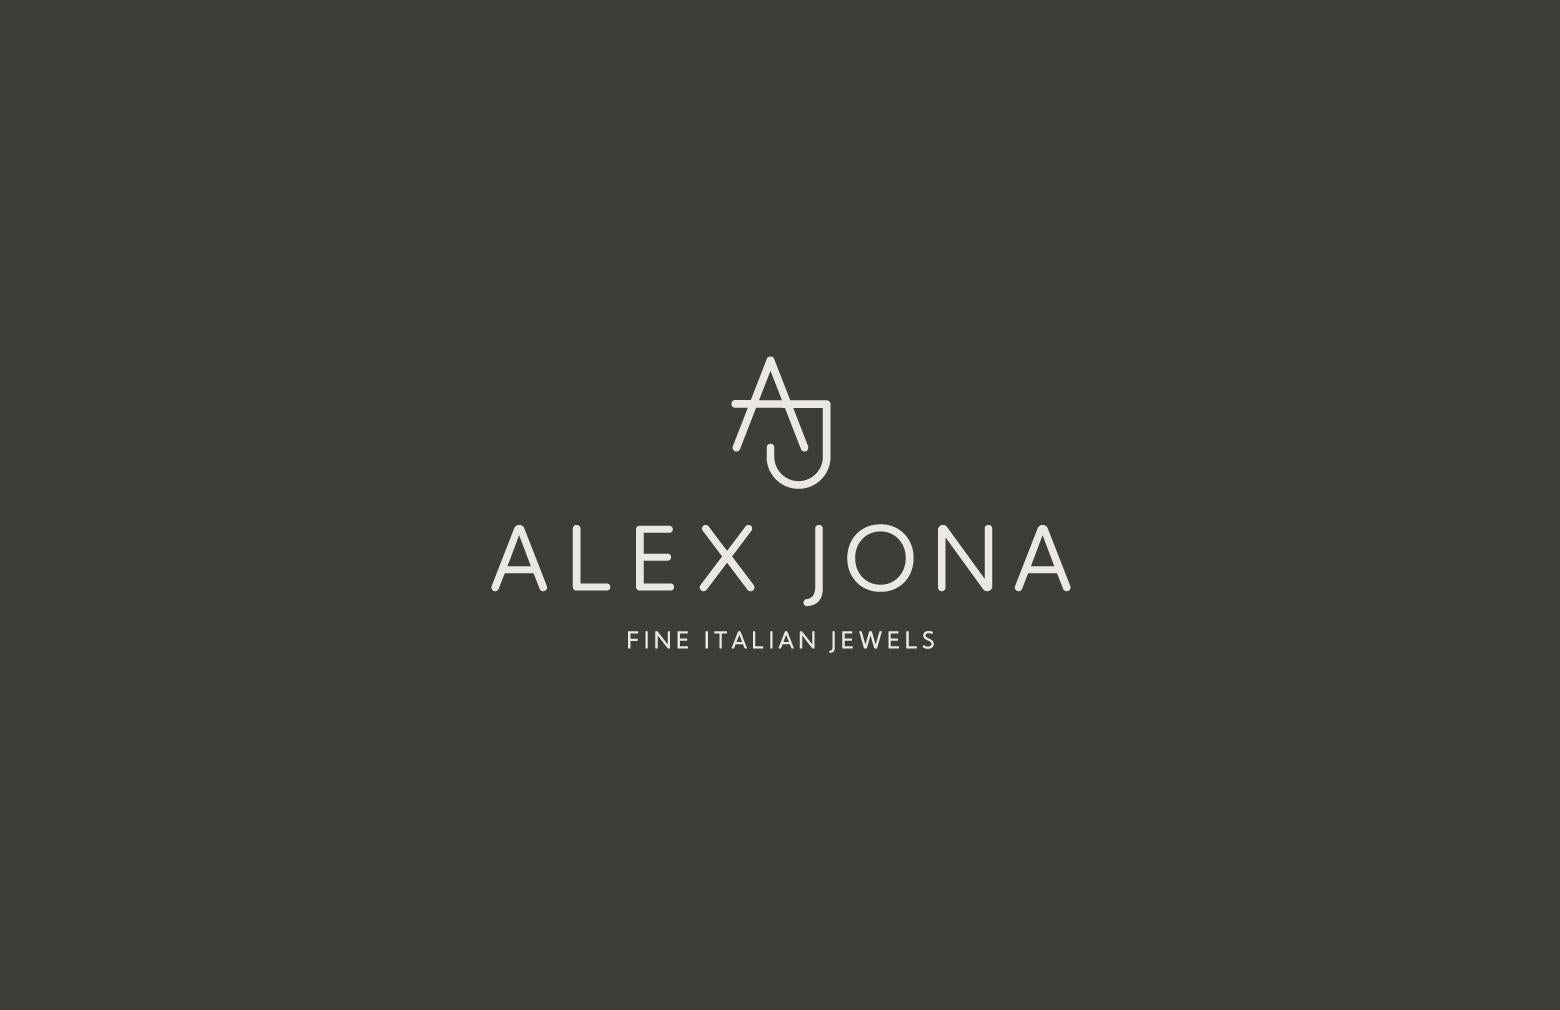 Alex Jona Moonstone White Diamond 18k White Gold Rings For Sale 9